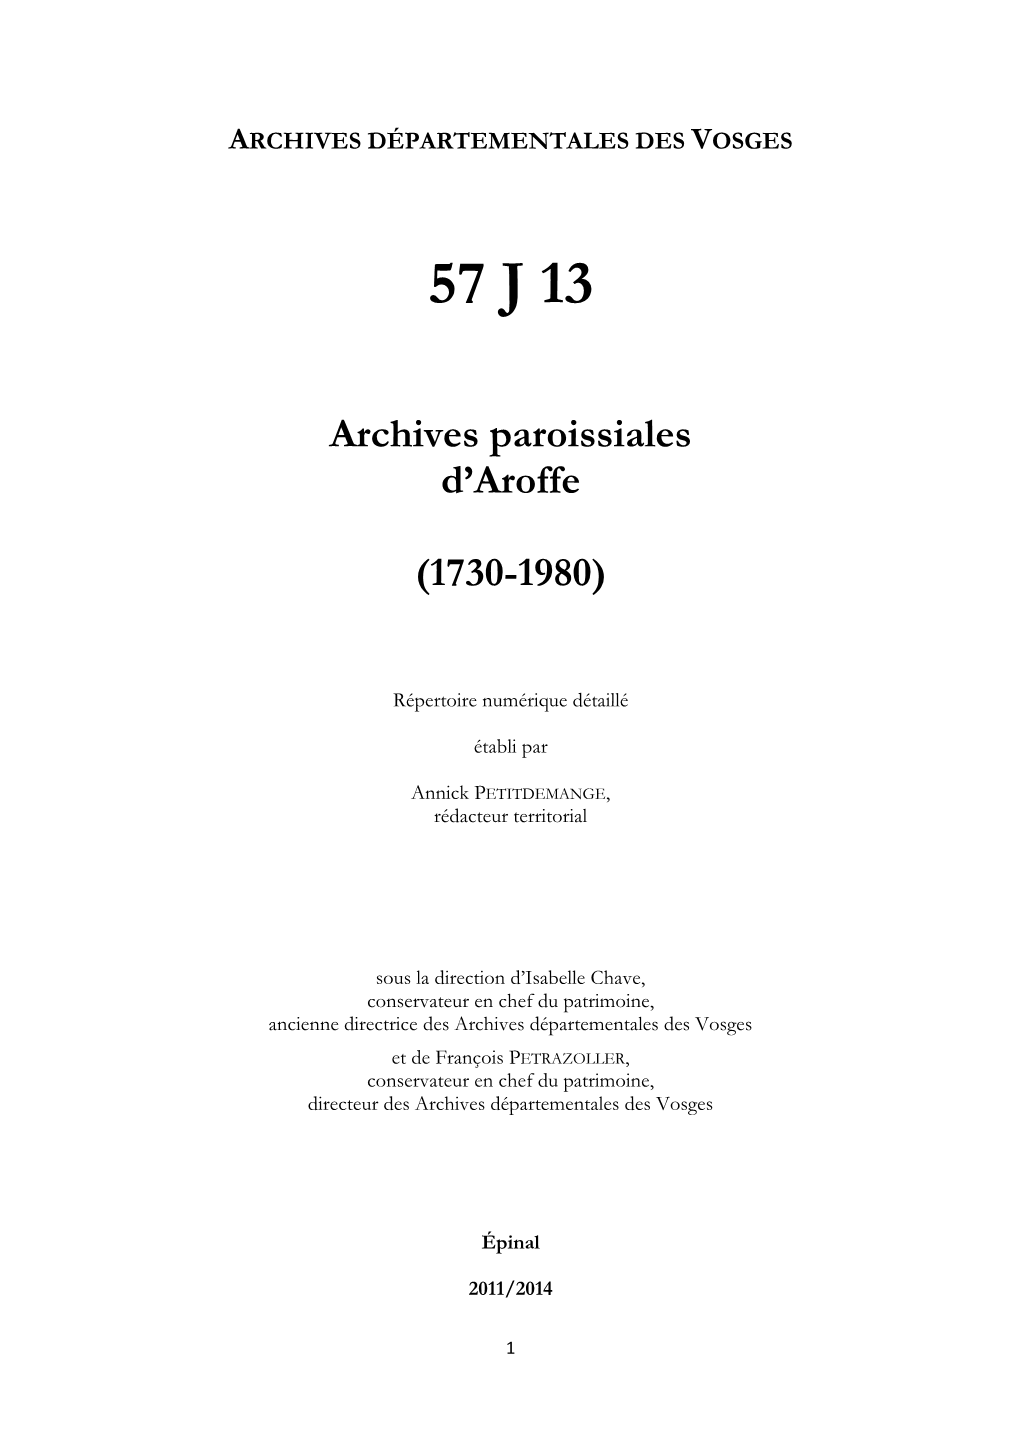 Archives De La Paroisse D'aroffe.Pdf